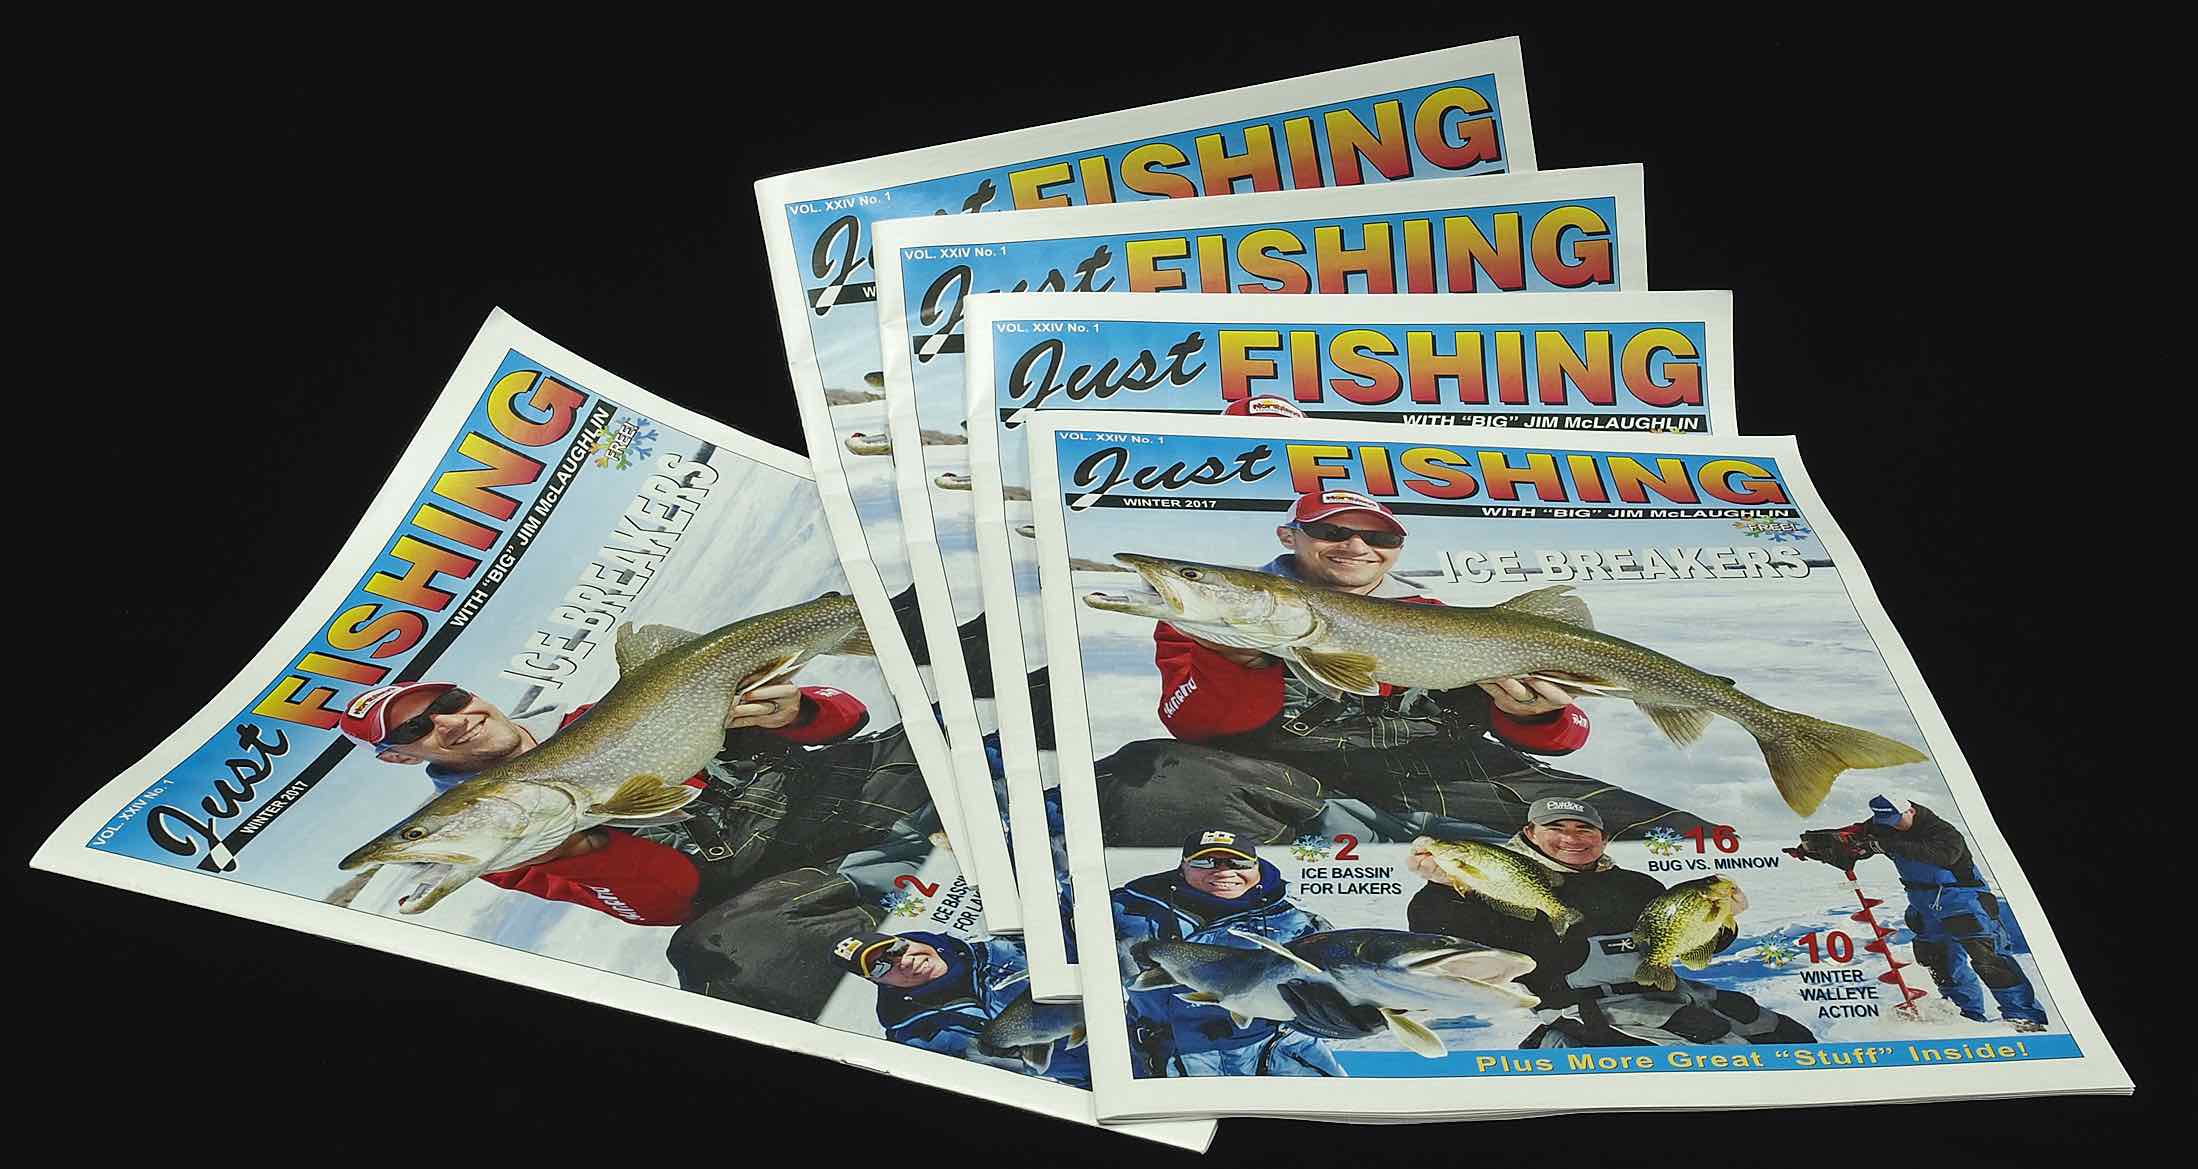 Just Fishing Magazine